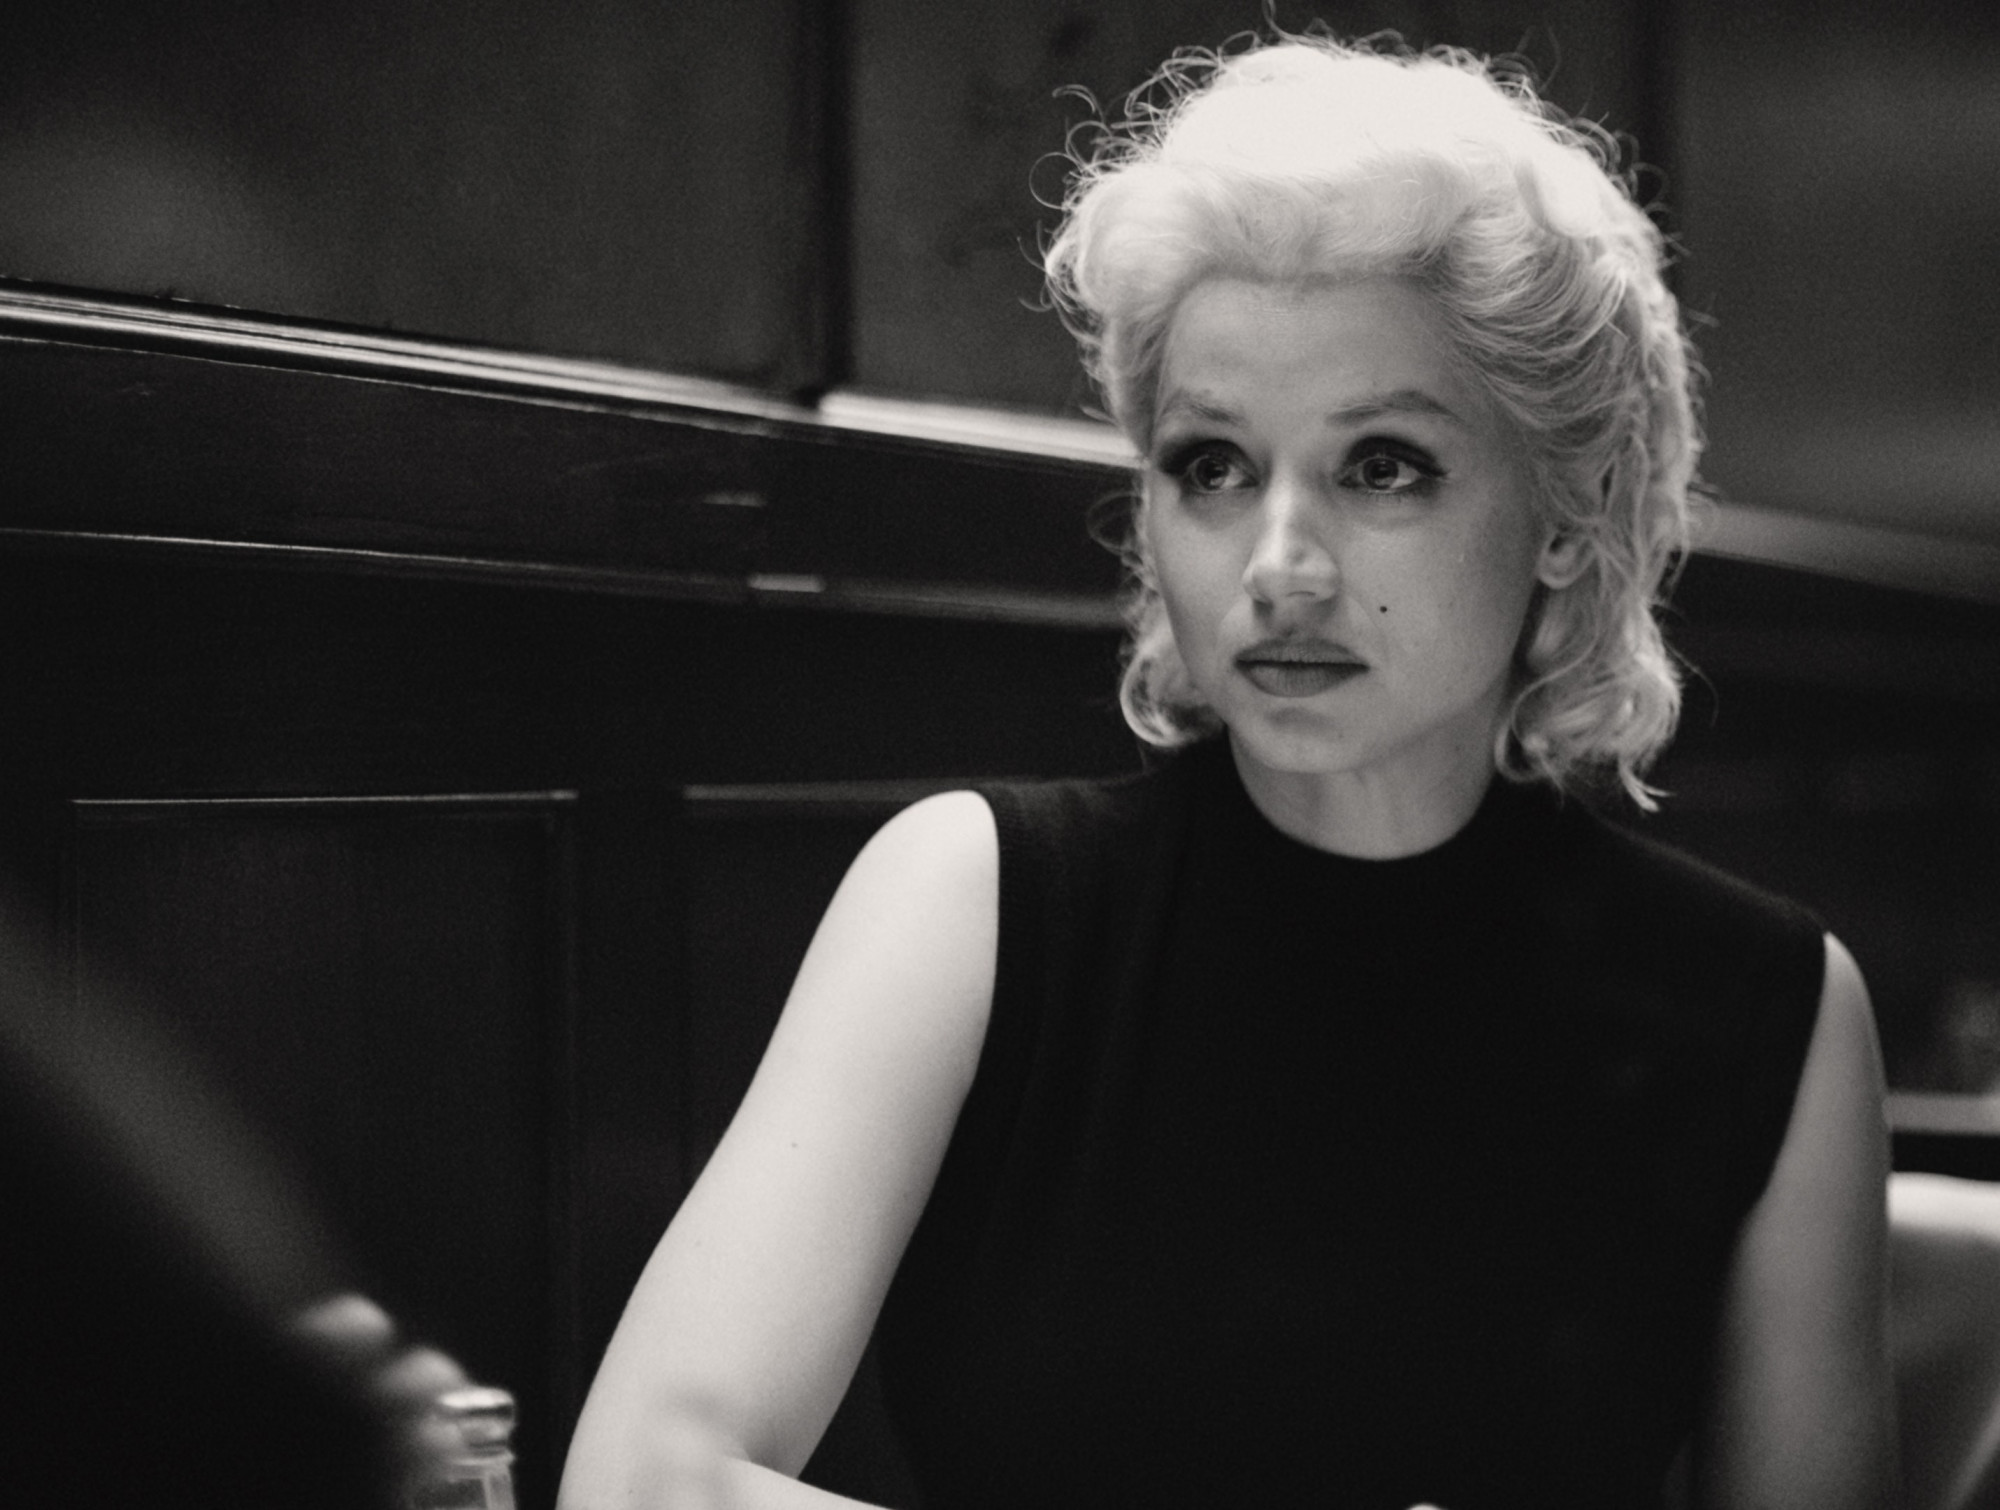 Phim về minh tinh Marilyn Monroe khiến người xem phẫn nộ-2